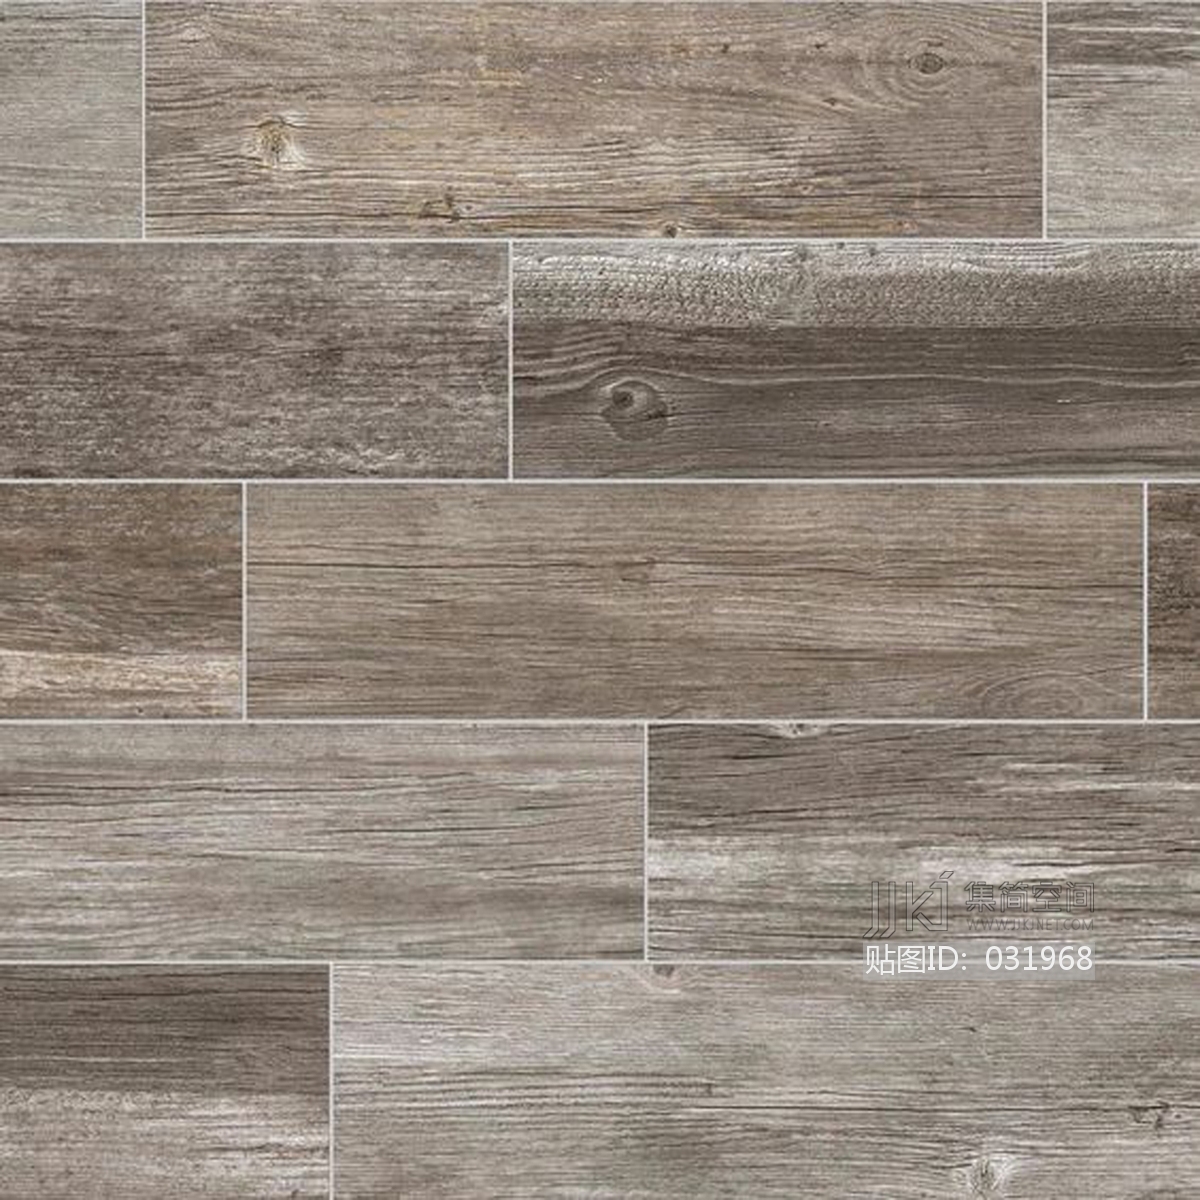 仿木纹木地板瓷砖地板砖木纹瓷砖 (64)材质贴图下载-【集简空间】「每日更新」